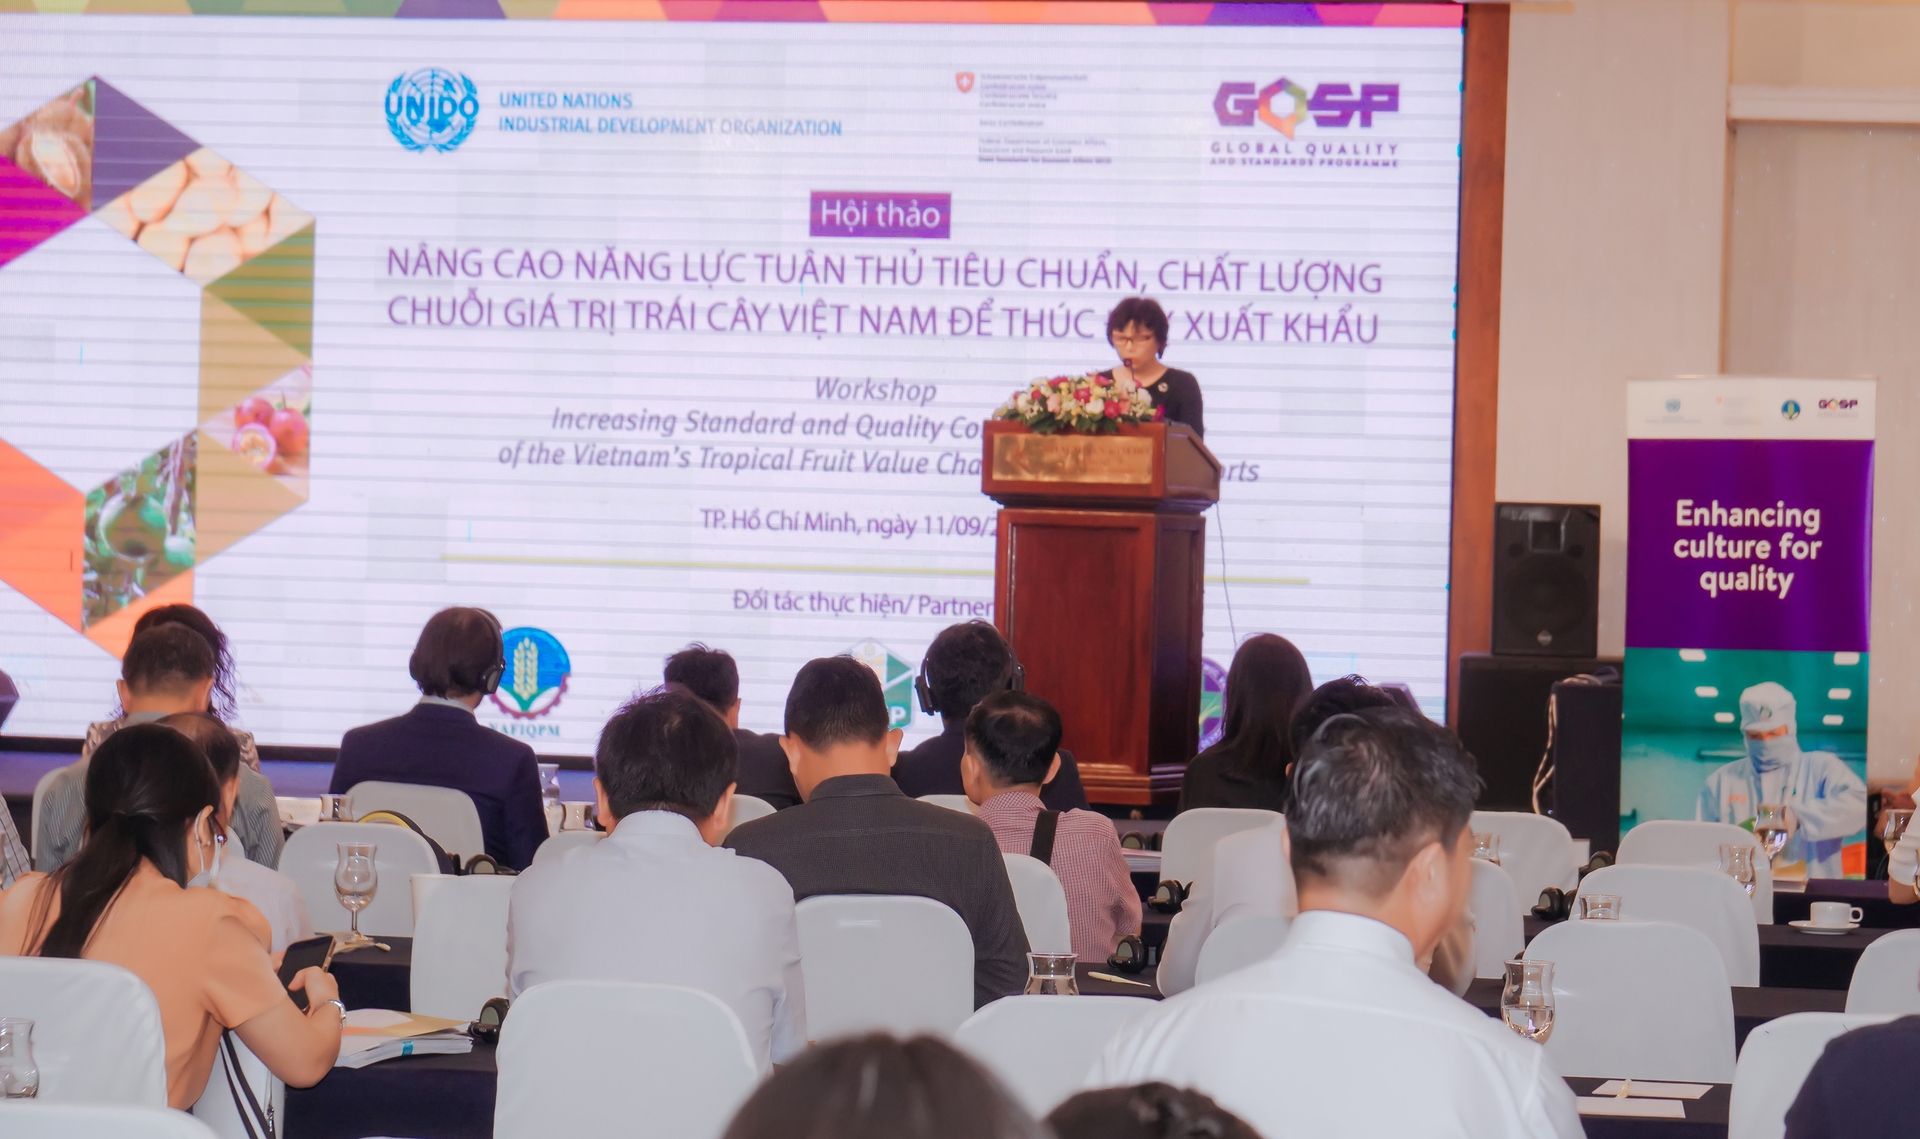 Hội thảo 'Nâng cao năng lực tuân thủ tiêu chuẩn, chất lượng chuỗi giá trị trái cây Việt Nam để thúc đẩy xuất khẩu'.